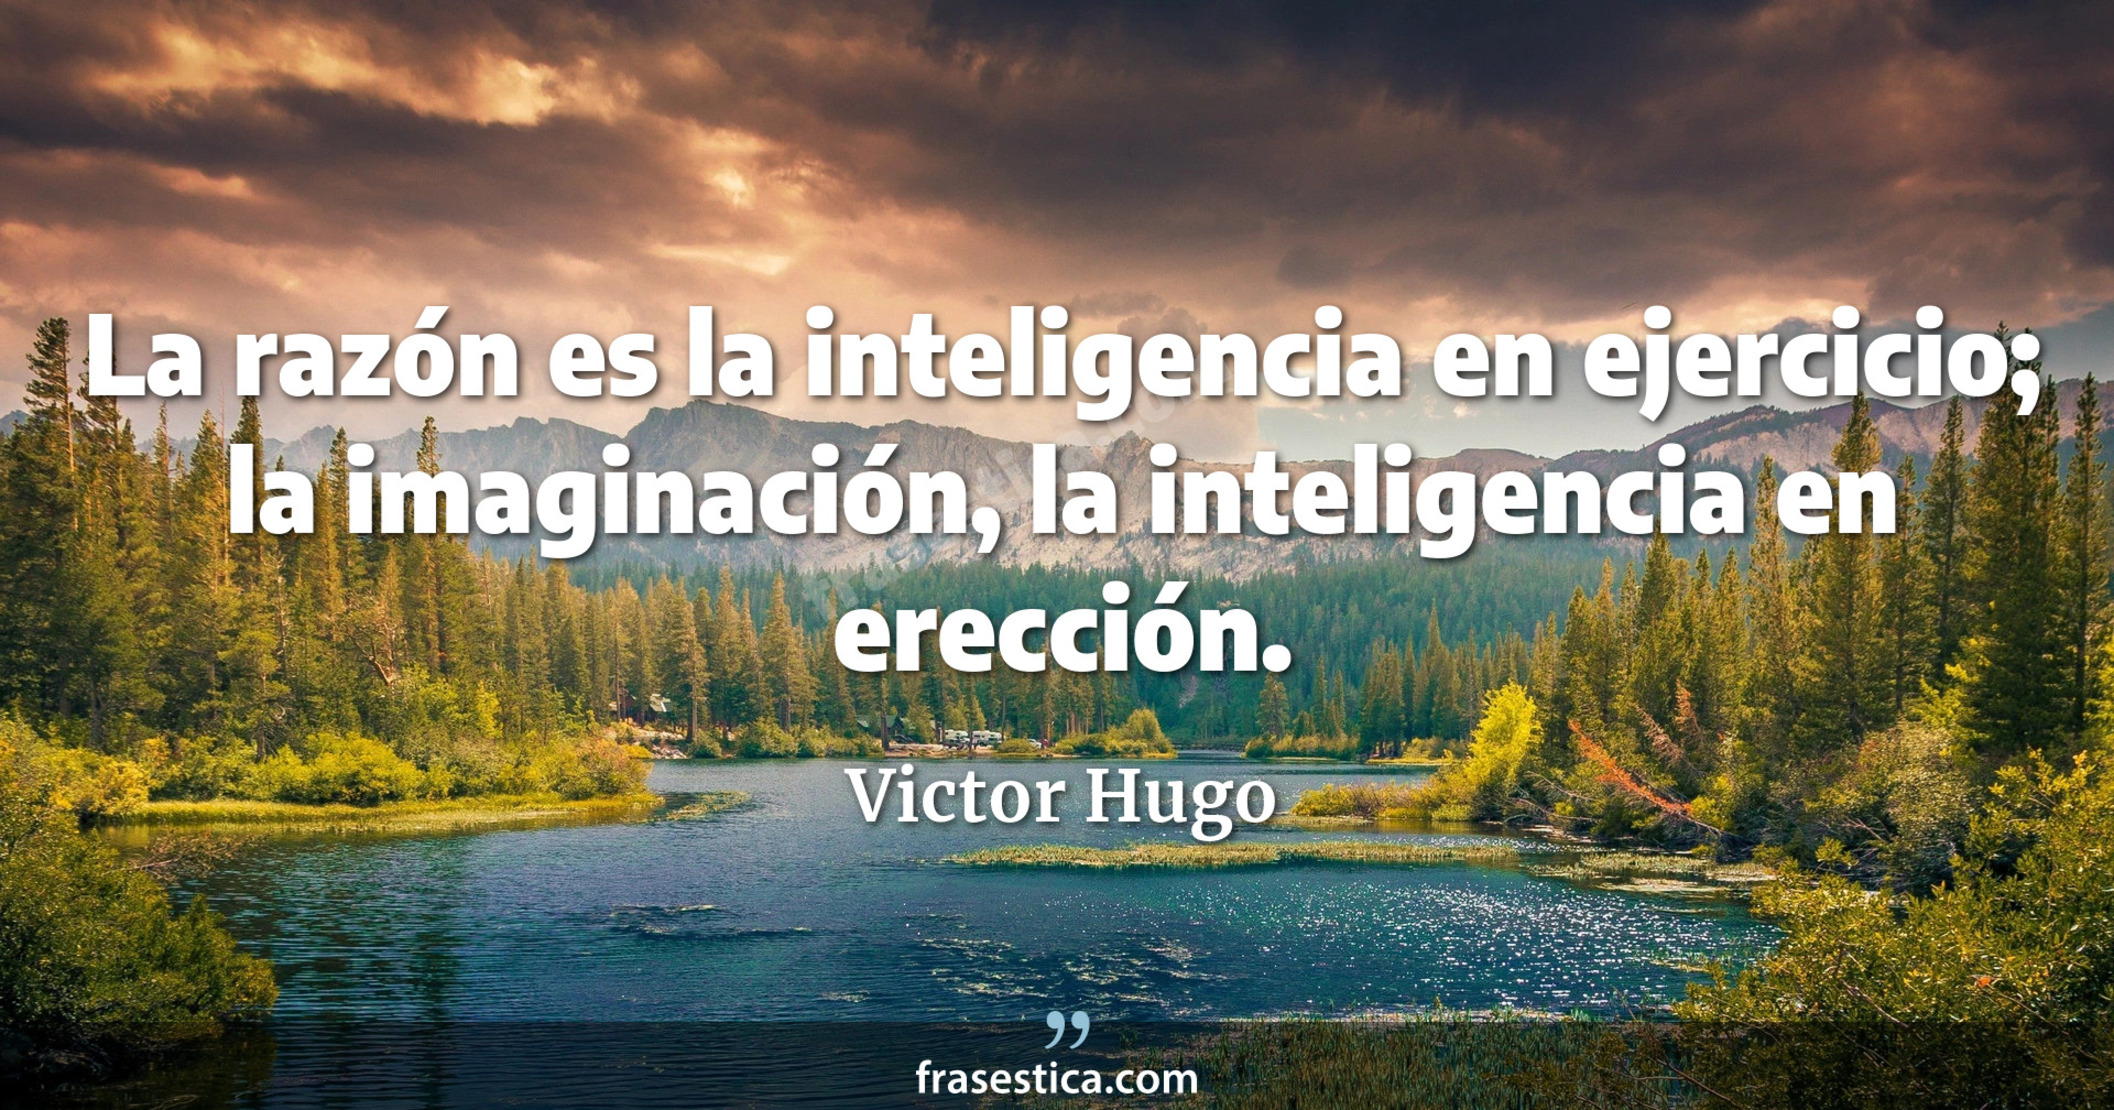 La razón es la inteligencia en ejercicio; la imaginación, la inteligencia en erección. - Victor Hugo